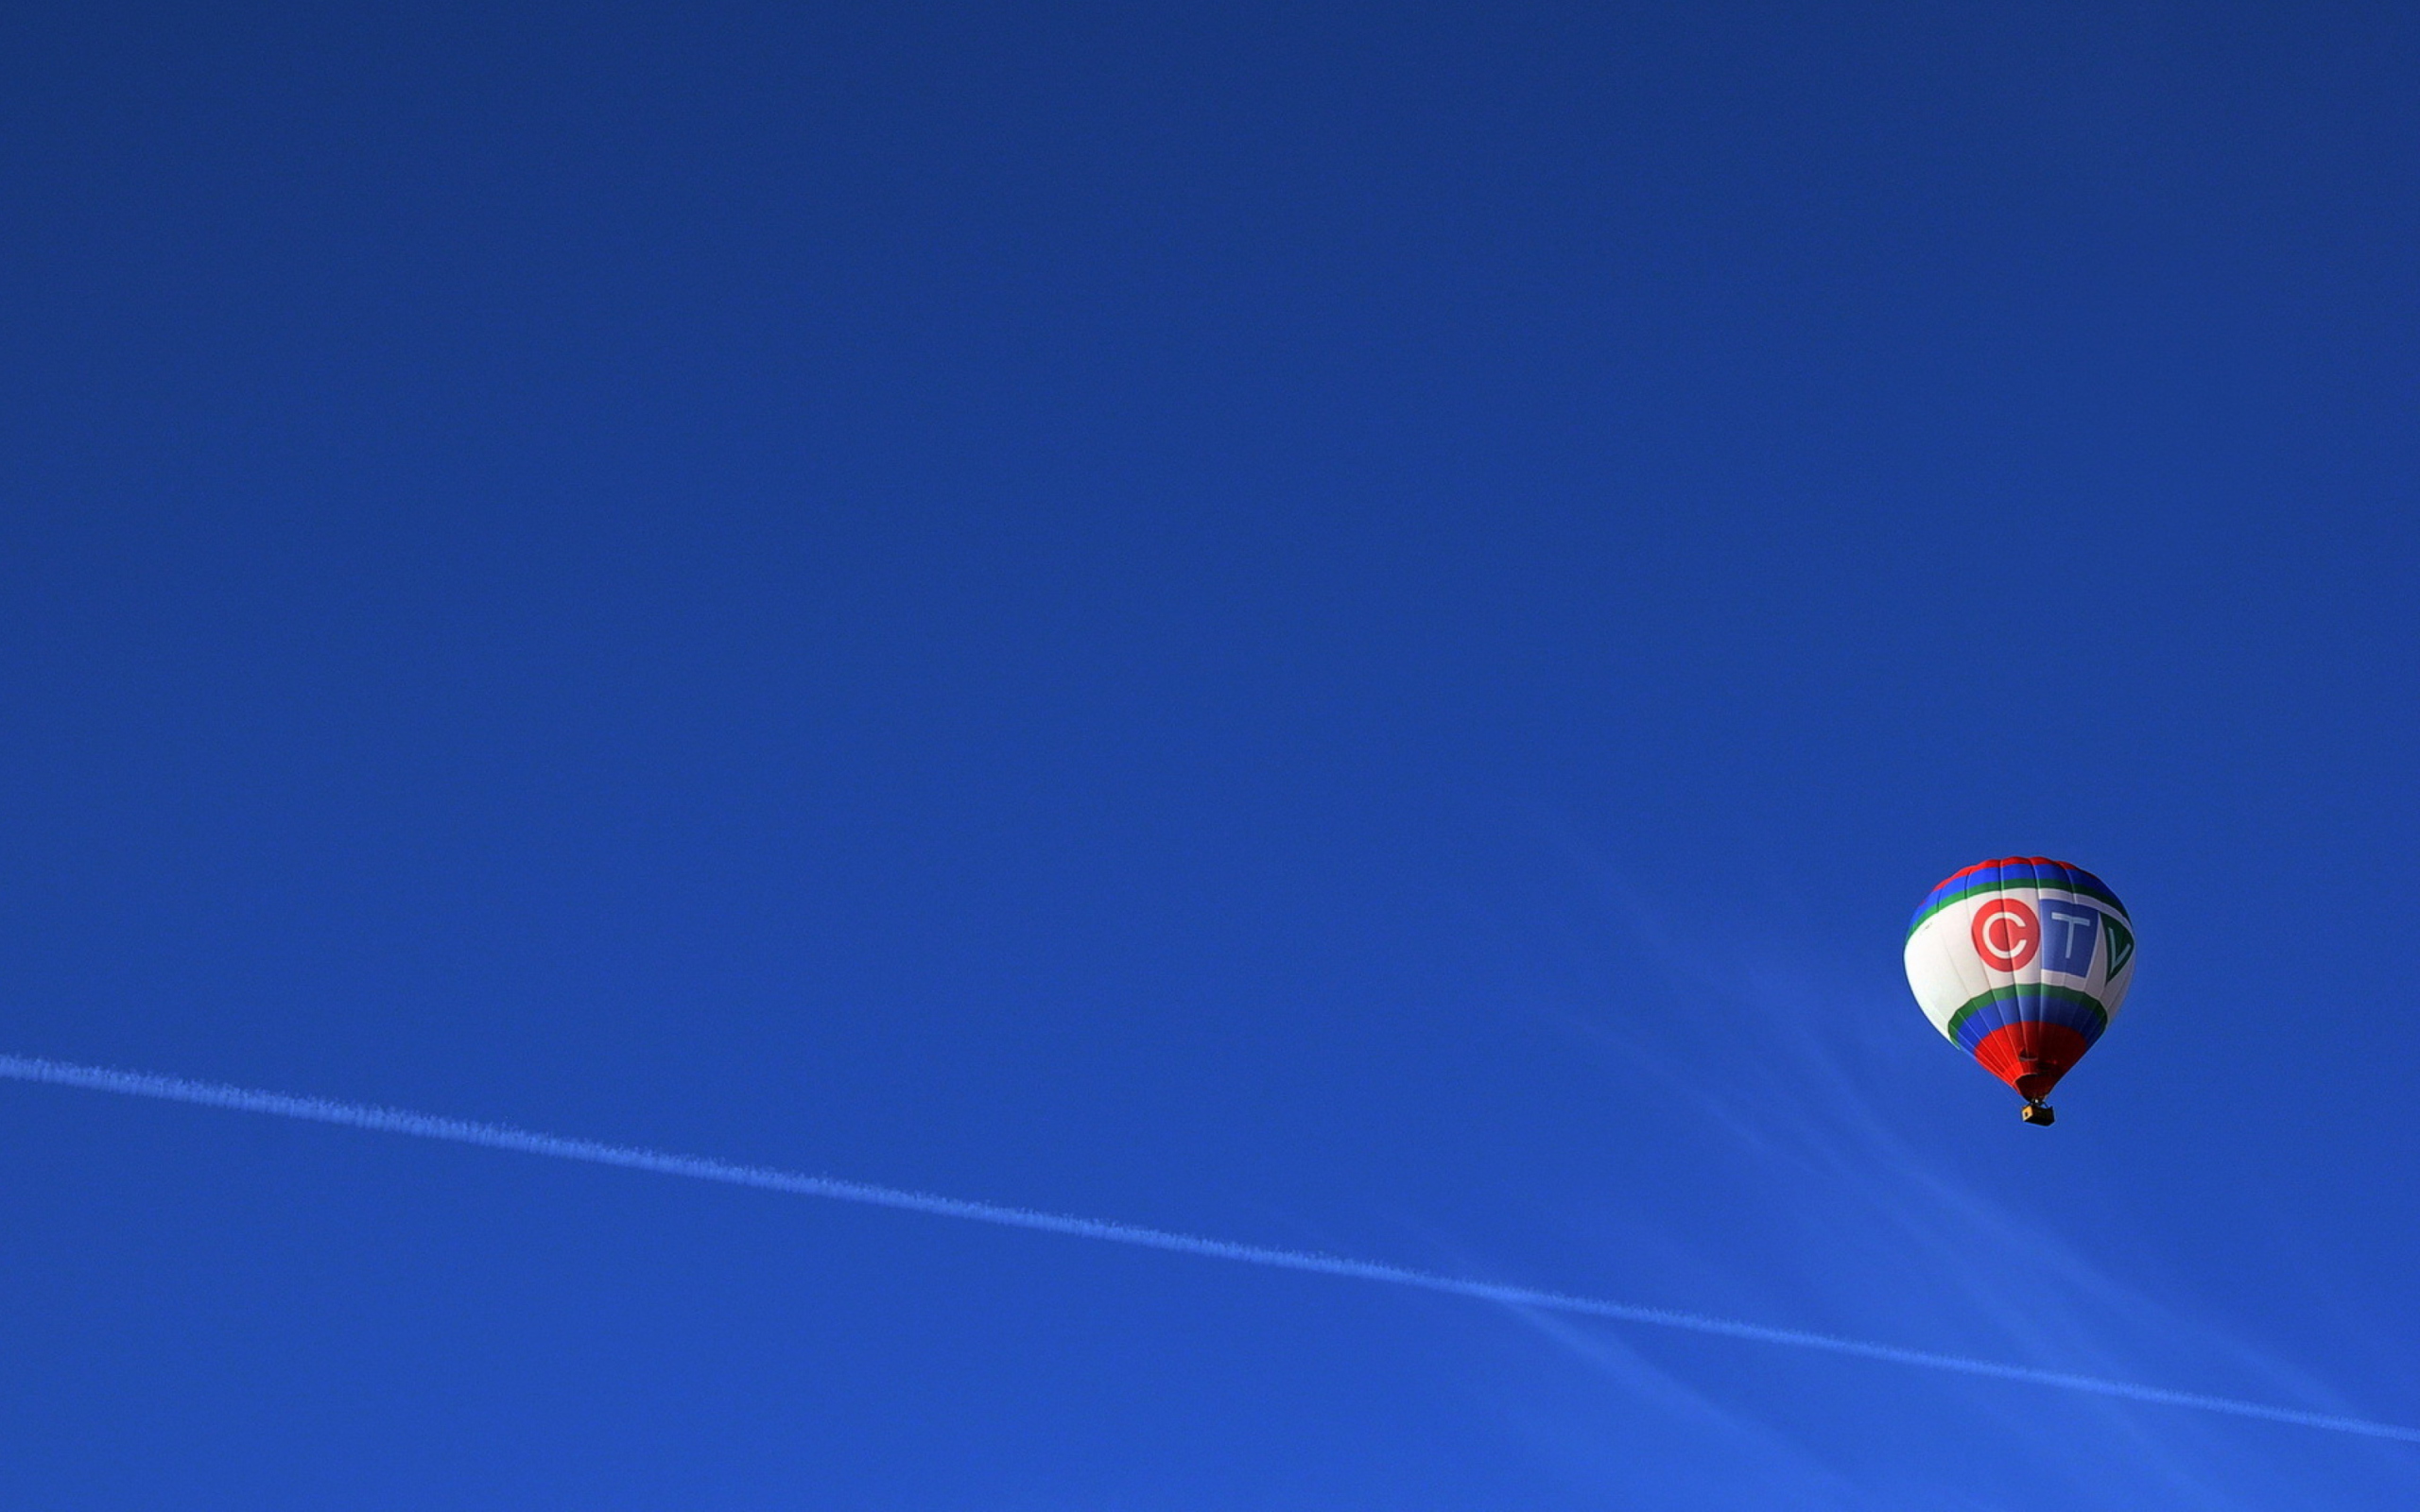 Обои Balloon In Blue Sky 2560x1600